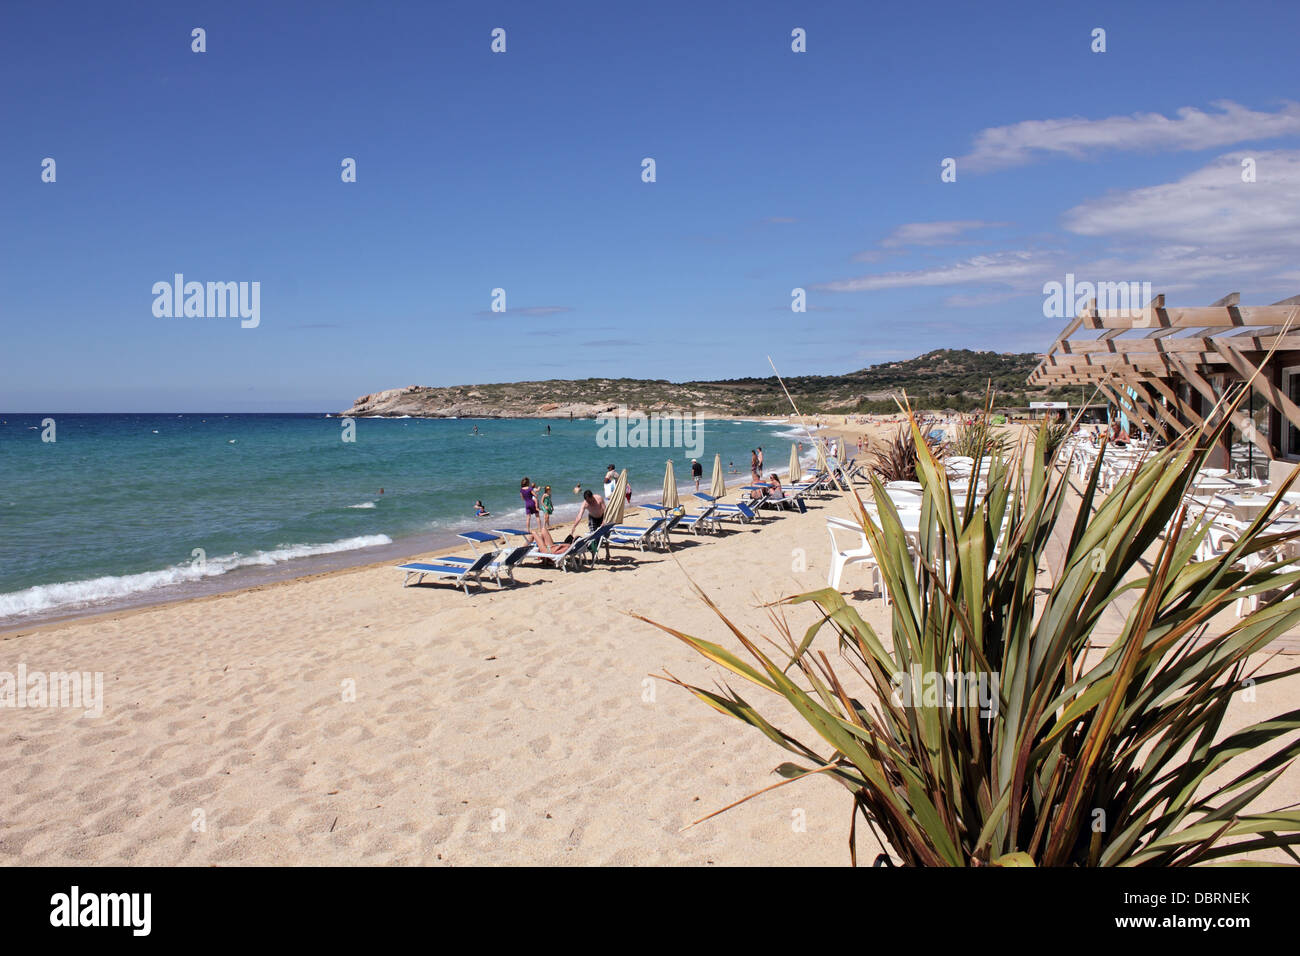 Le Mediterranean resort d'Algajola, qui se situe entre Calvi et l'Ile Rousse, sur la côte nord de la Corse, France. Banque D'Images